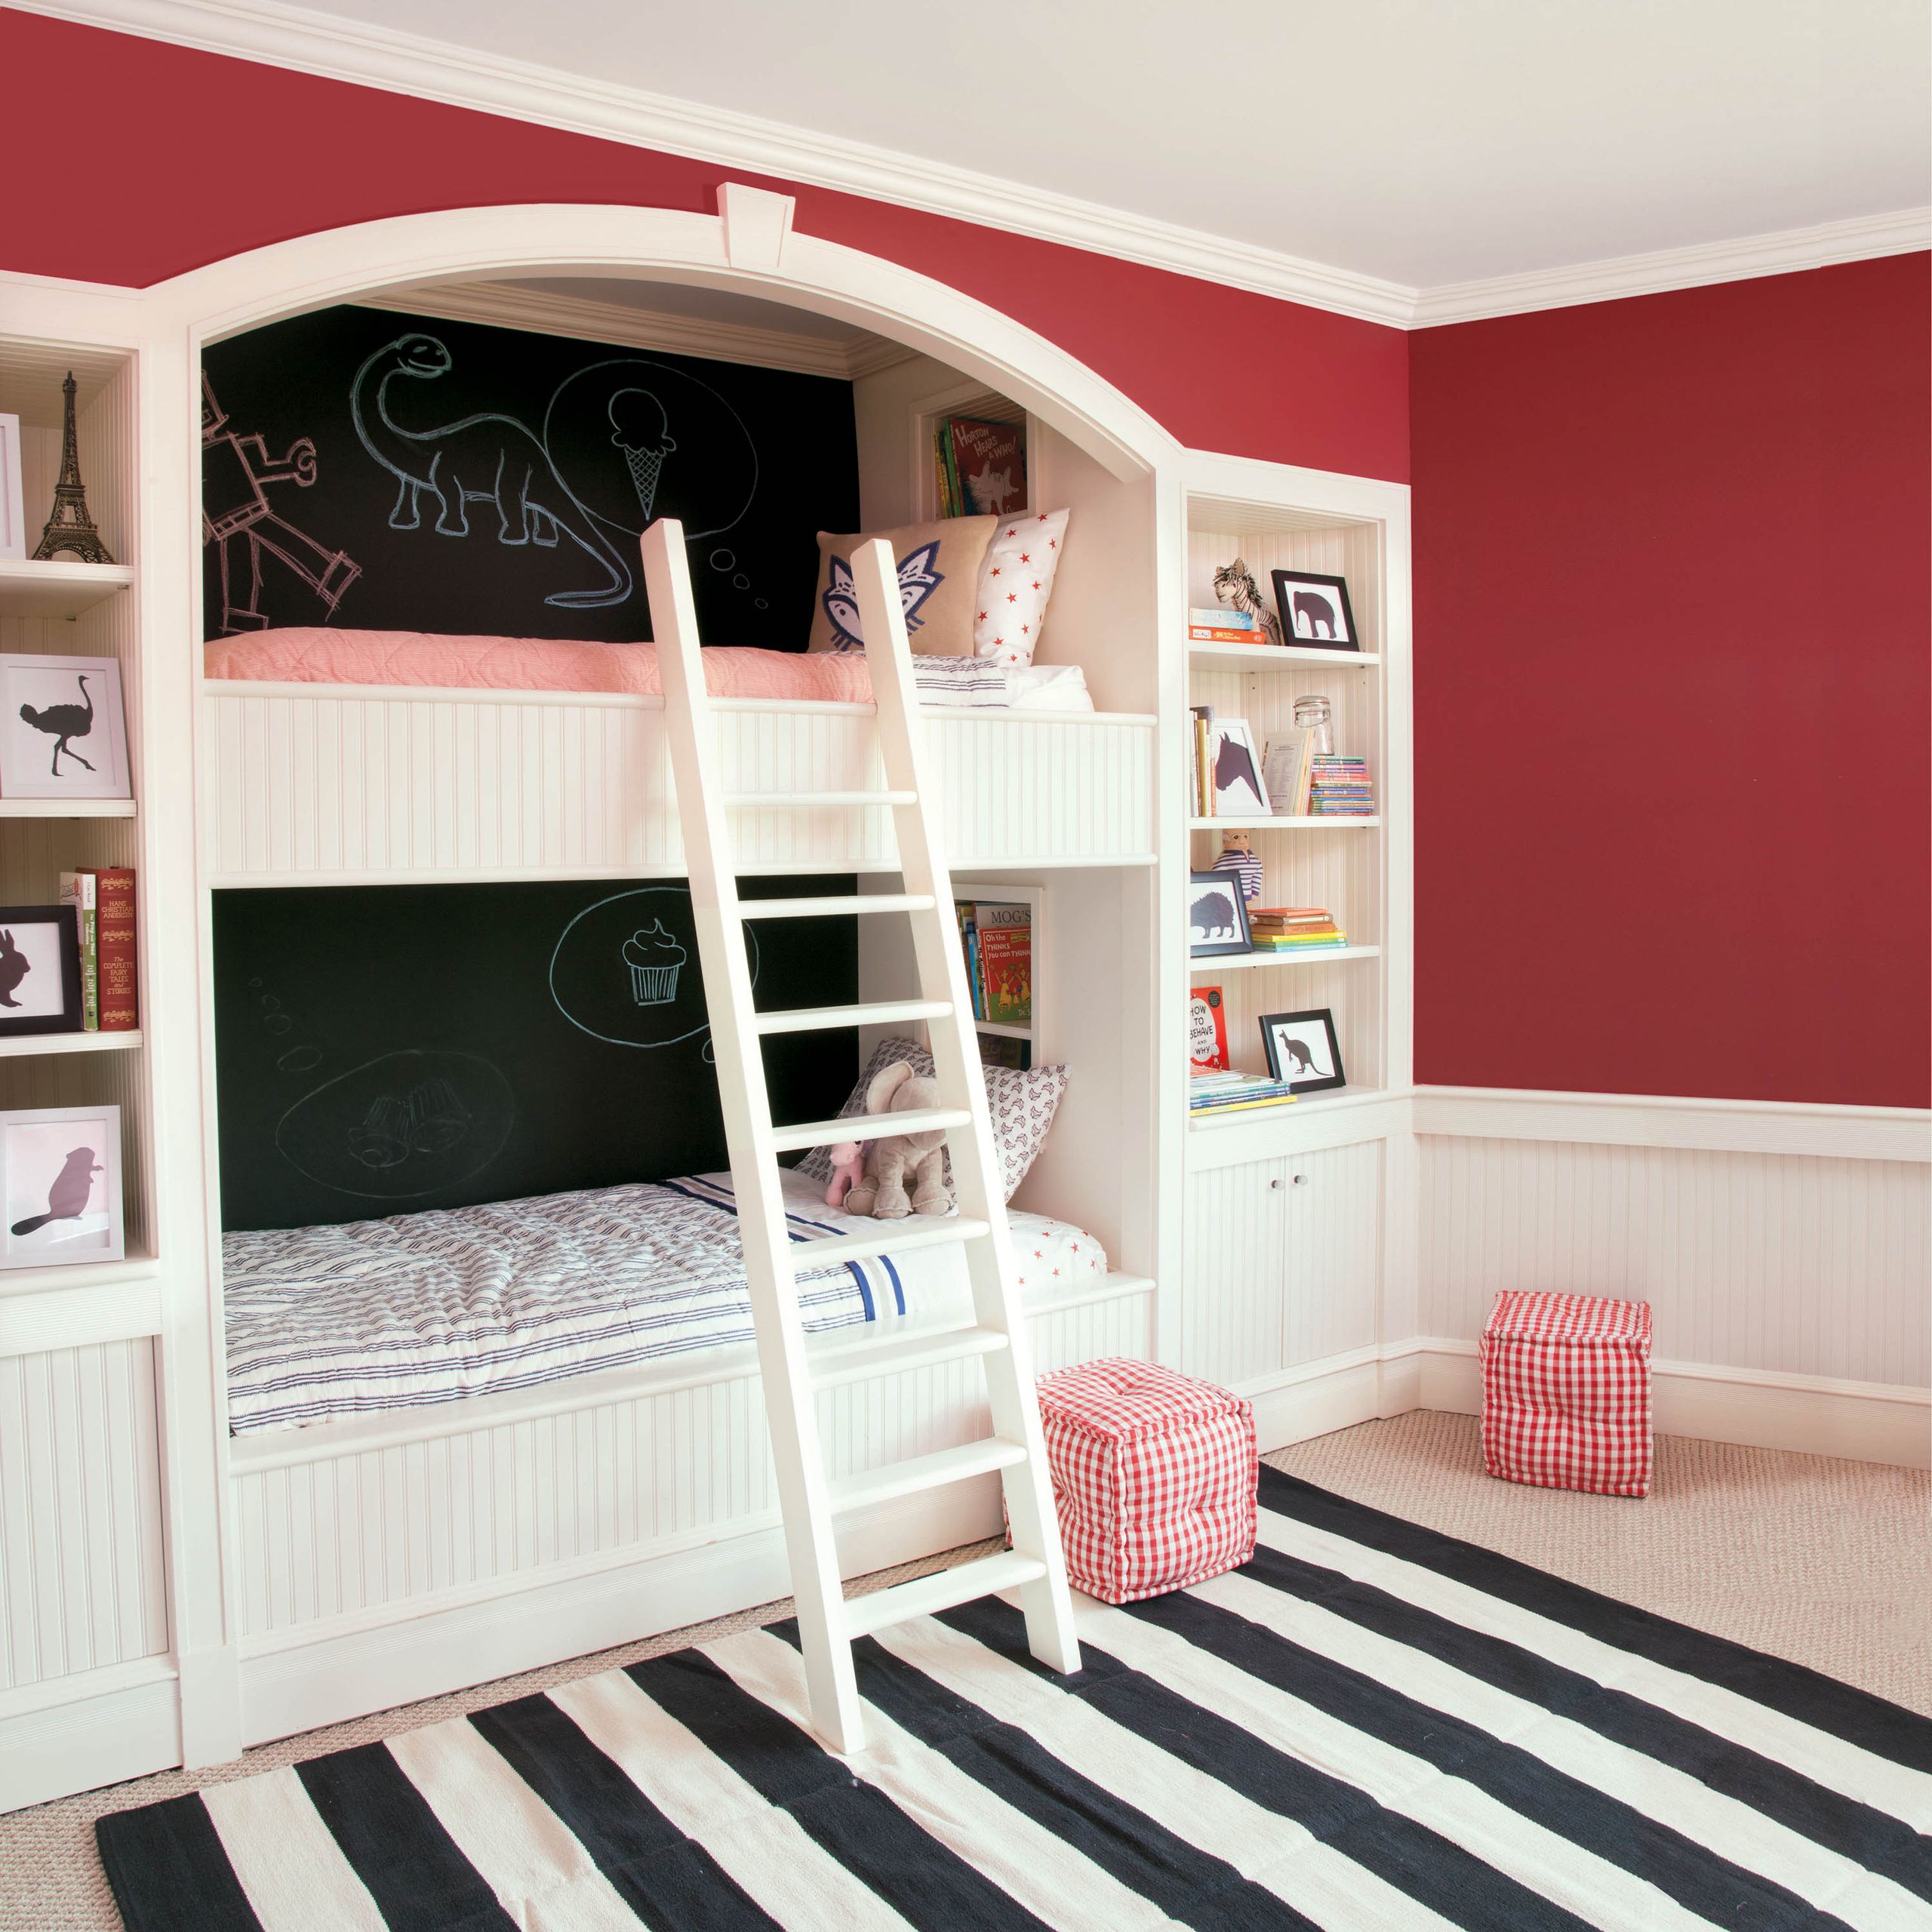 Las literas de los niños con la pared de pintura de pizarra y las paredes principales rojas's bunk beds with blackboard paint wall and red main walls